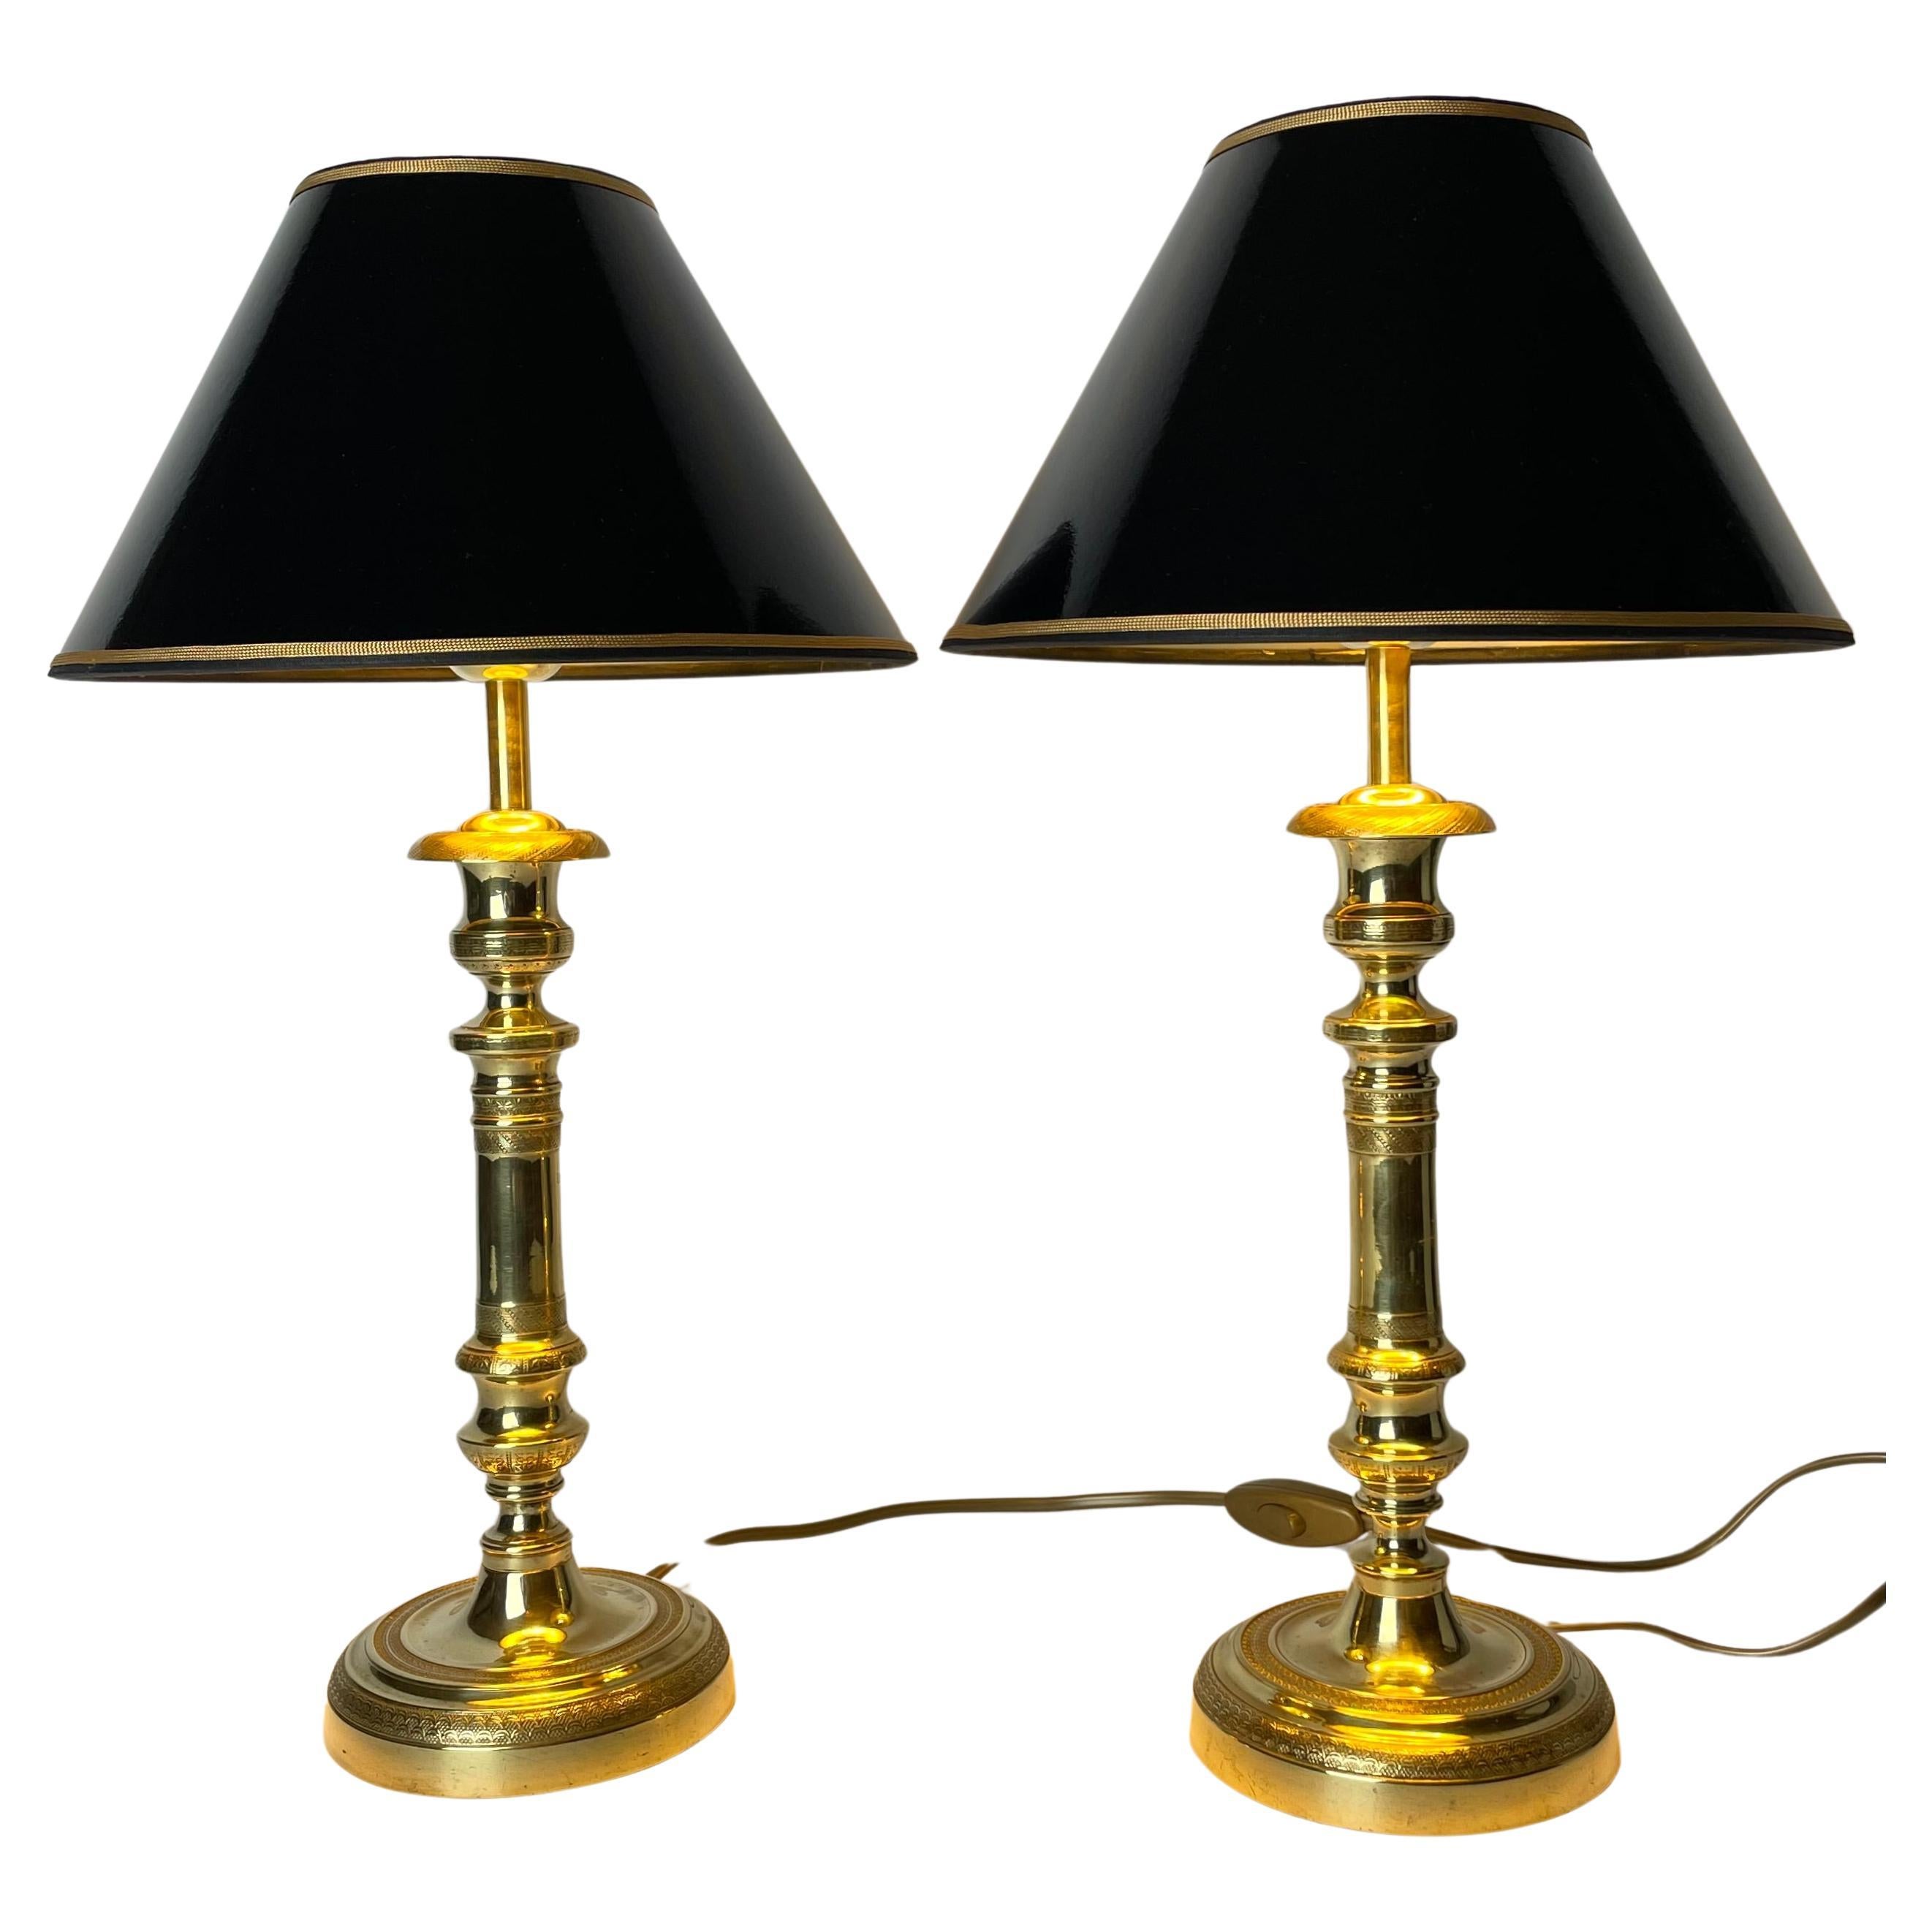 Élégante paire de lampes de table Empire, à l'origine chandeliers des années 1820